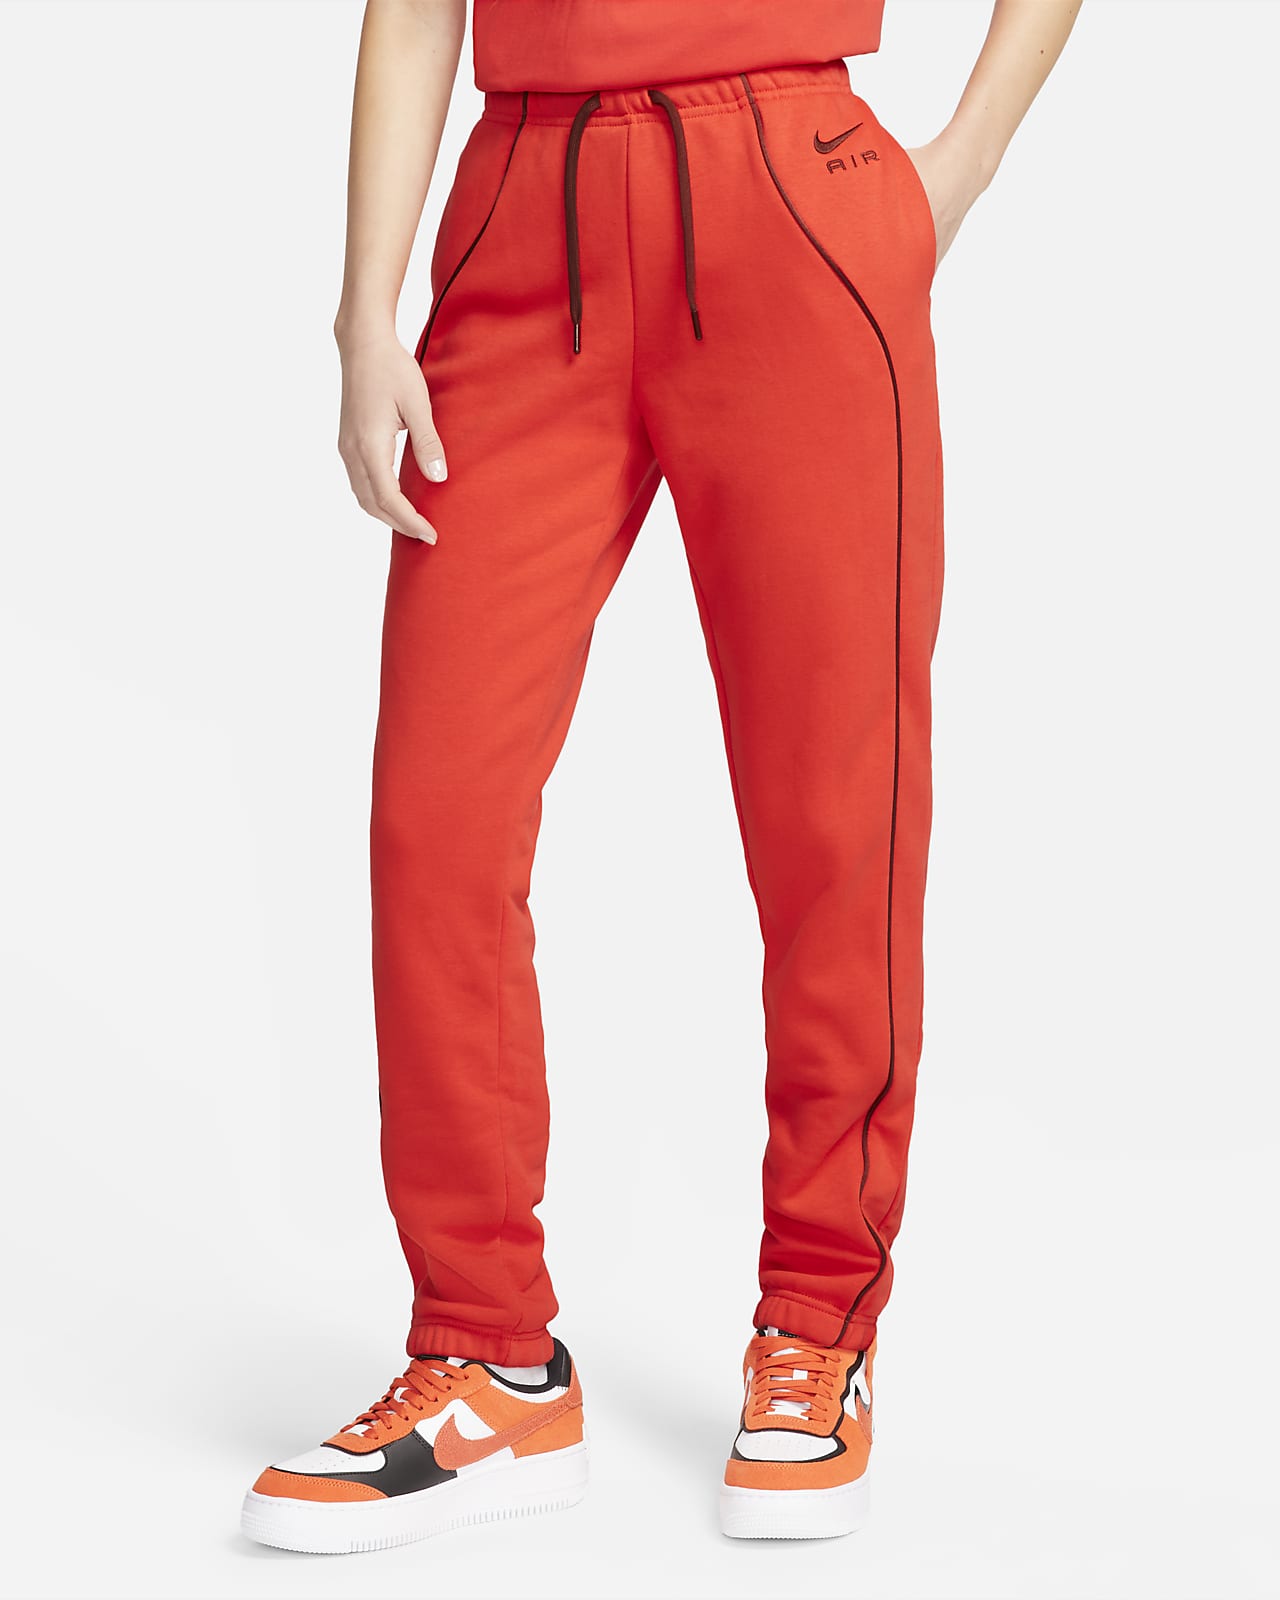 Dámské flísové běžecké kalhoty Nike Air se středně vysokým pasem